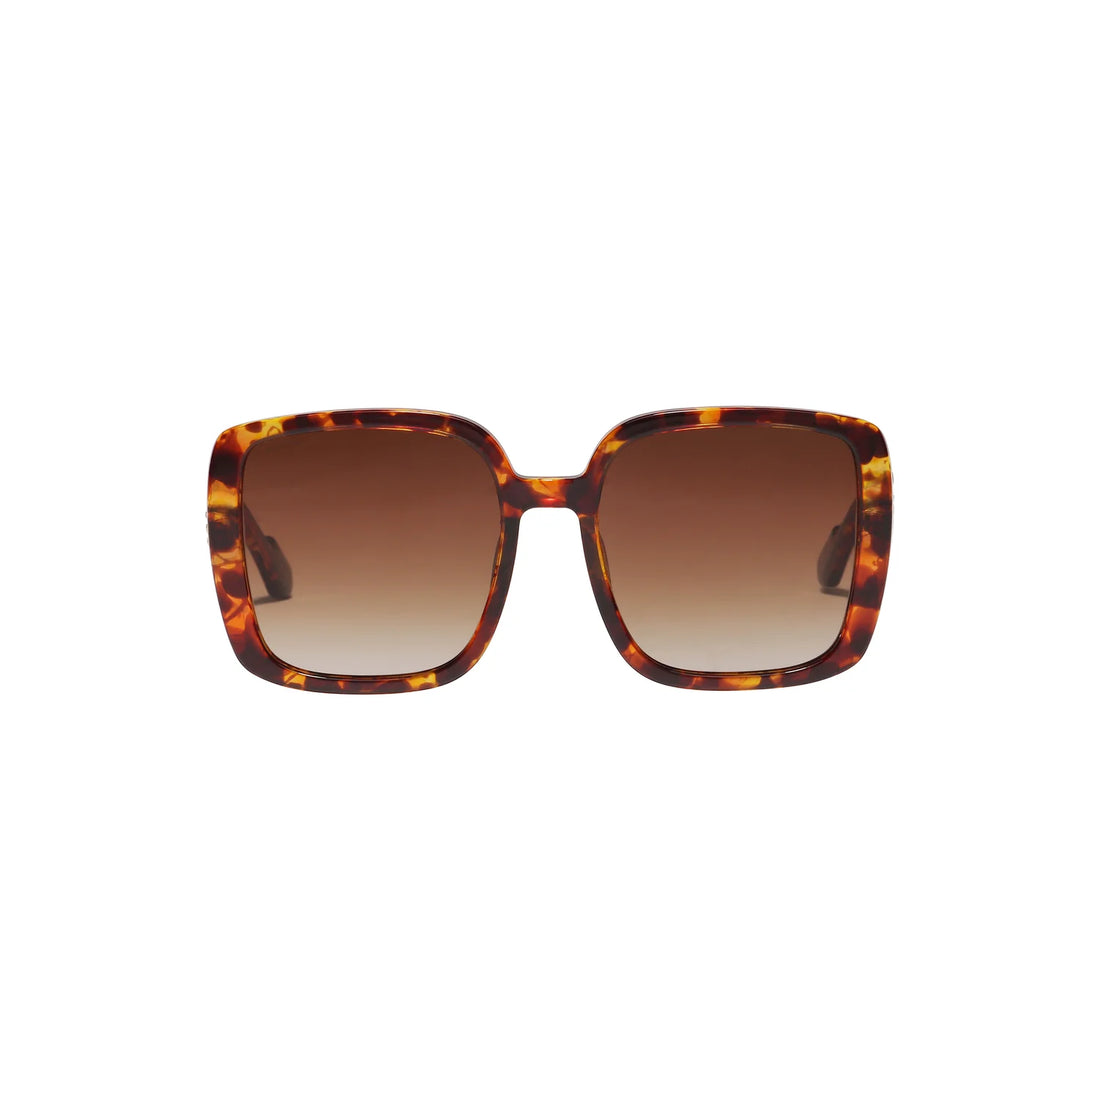 ALIET sunglasses tortoise brown/gold - PILGRIM